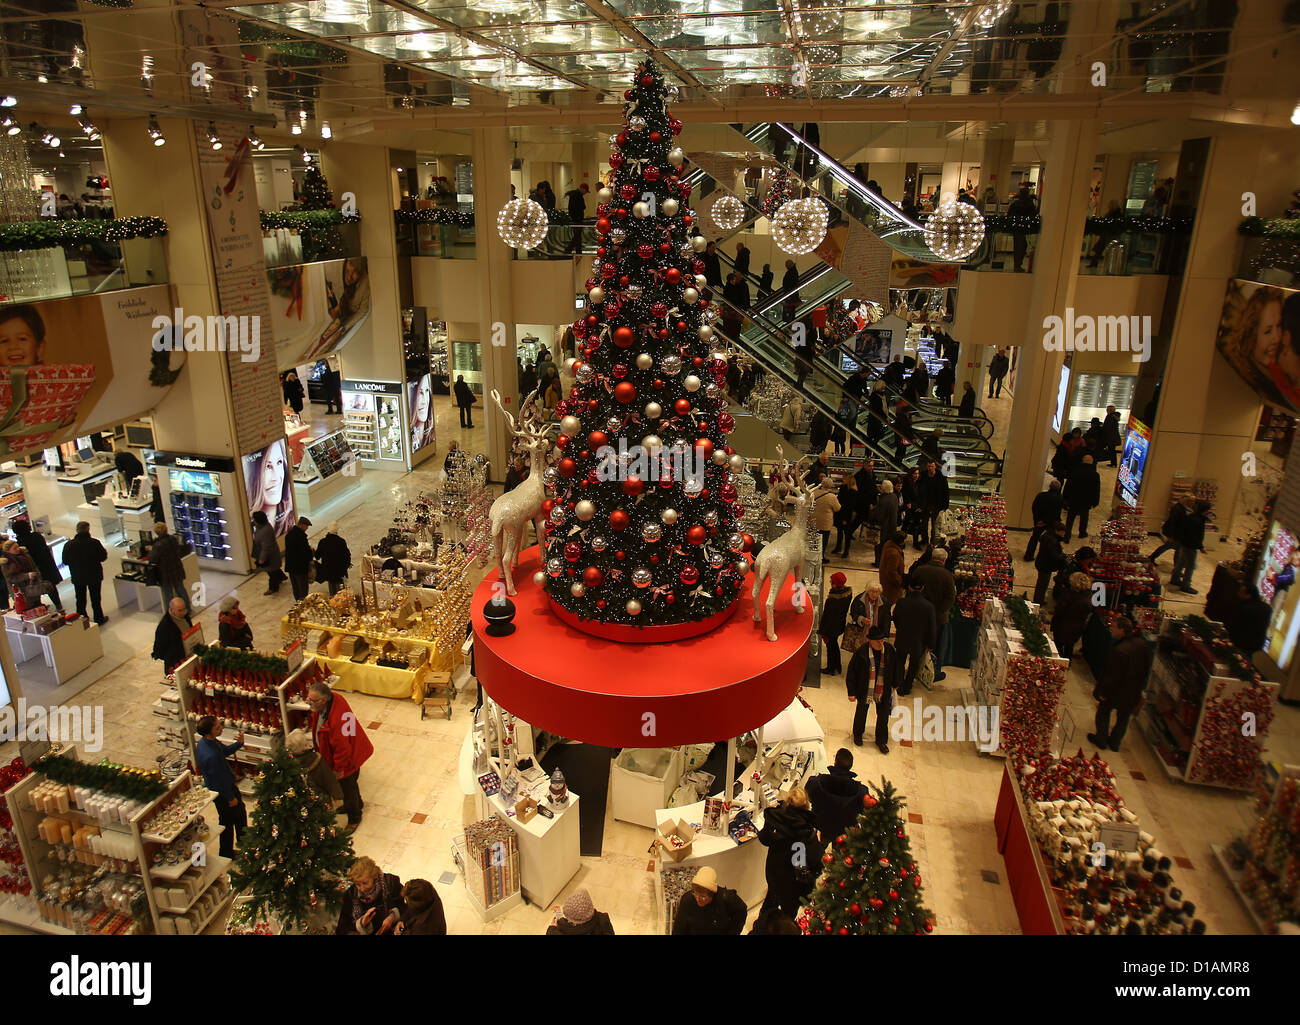 Un arbre de Noël décoré se trouve dans un magasin à Cologne, Allemagne, le 12 décembre 2012. Photo : OLIVER BERG Banque D'Images